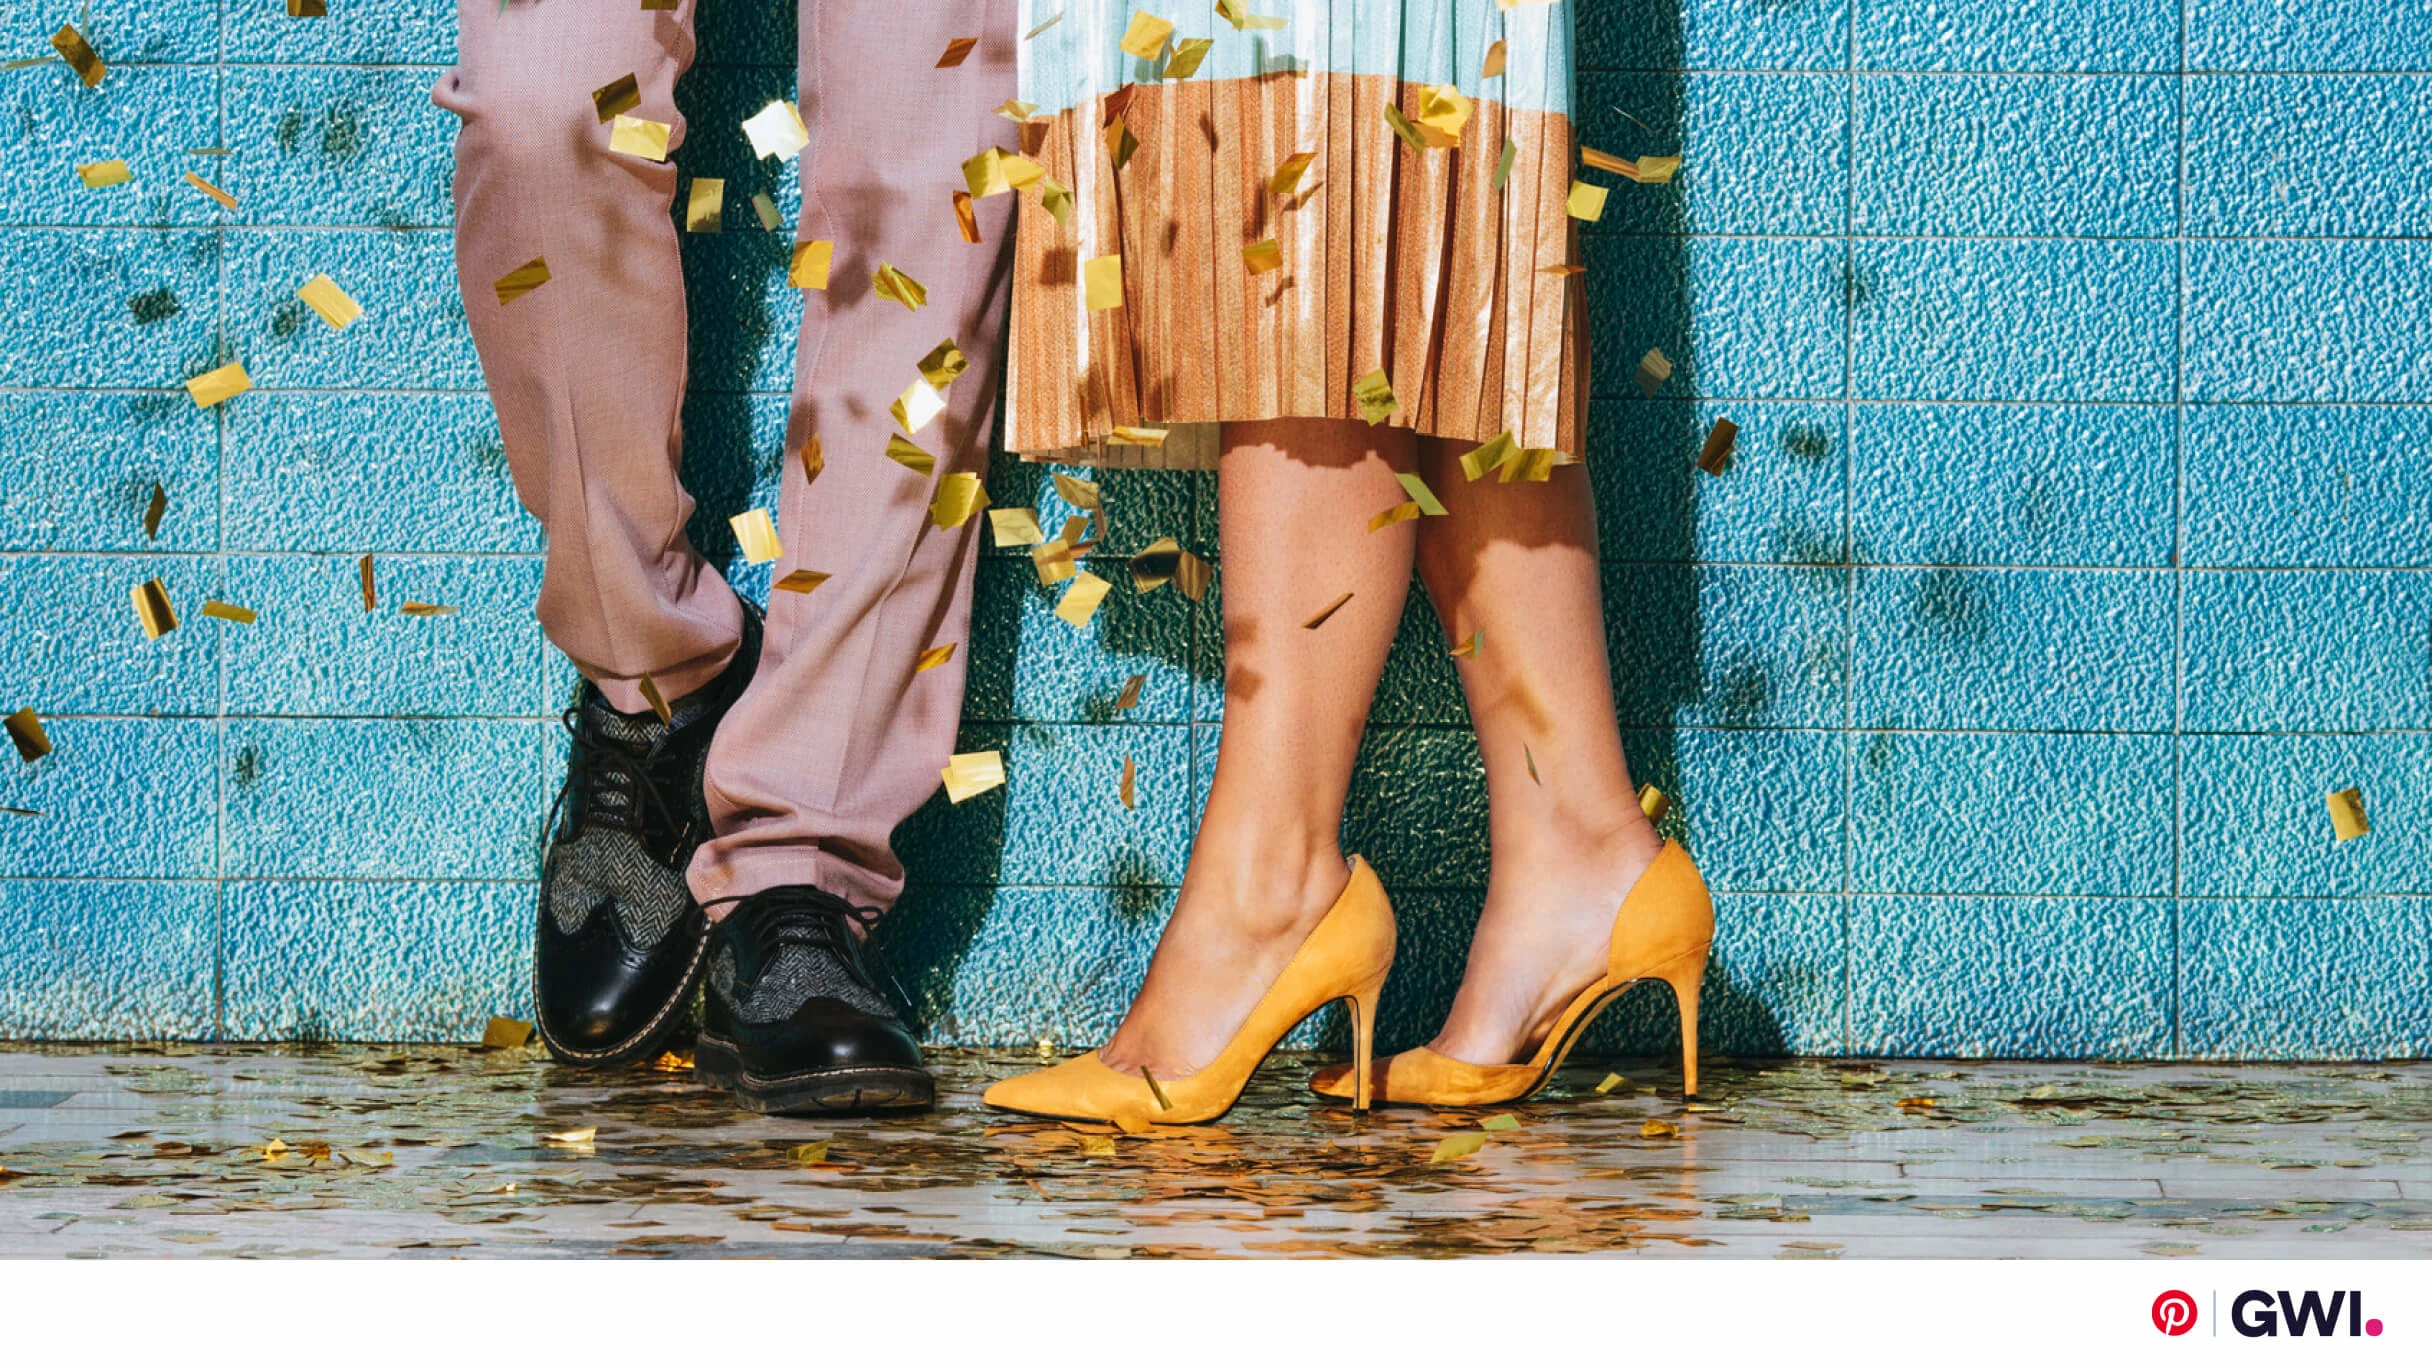 Pernas de duas pessoas próximas uma da outra contra uma parede azul, cercadas por confetes. A pessoa à esquerda veste uma calça na cor salmão e sapato social preto. A pessoa da direita usa uma saia bicolor e sapato de salto amarelo.